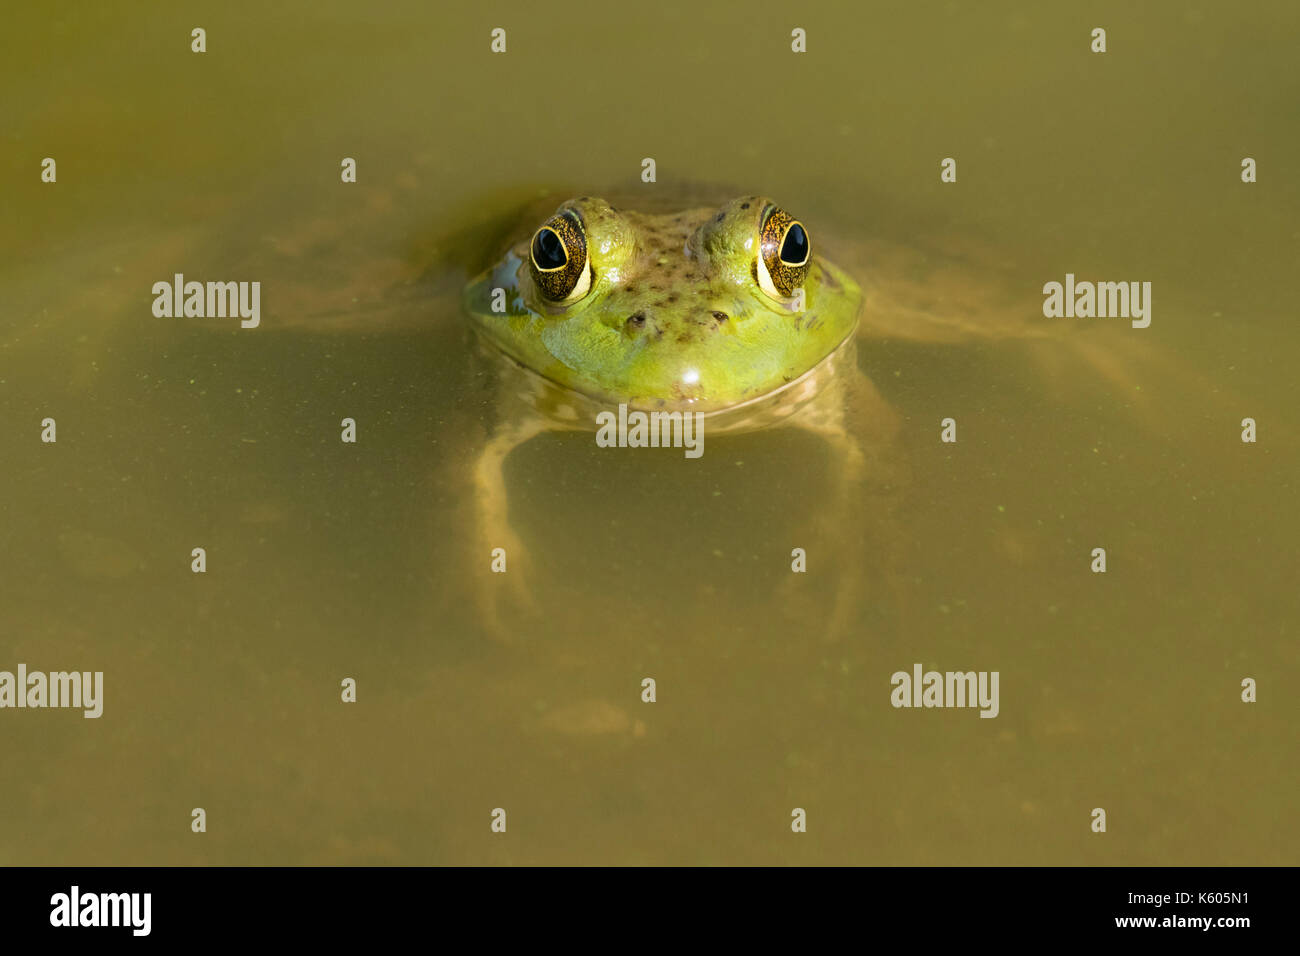 Amerikanische (Lithobates catesbeianus billfrog) in Wasser in einem See, Ames, Iowa, USA versenkt Stockfoto